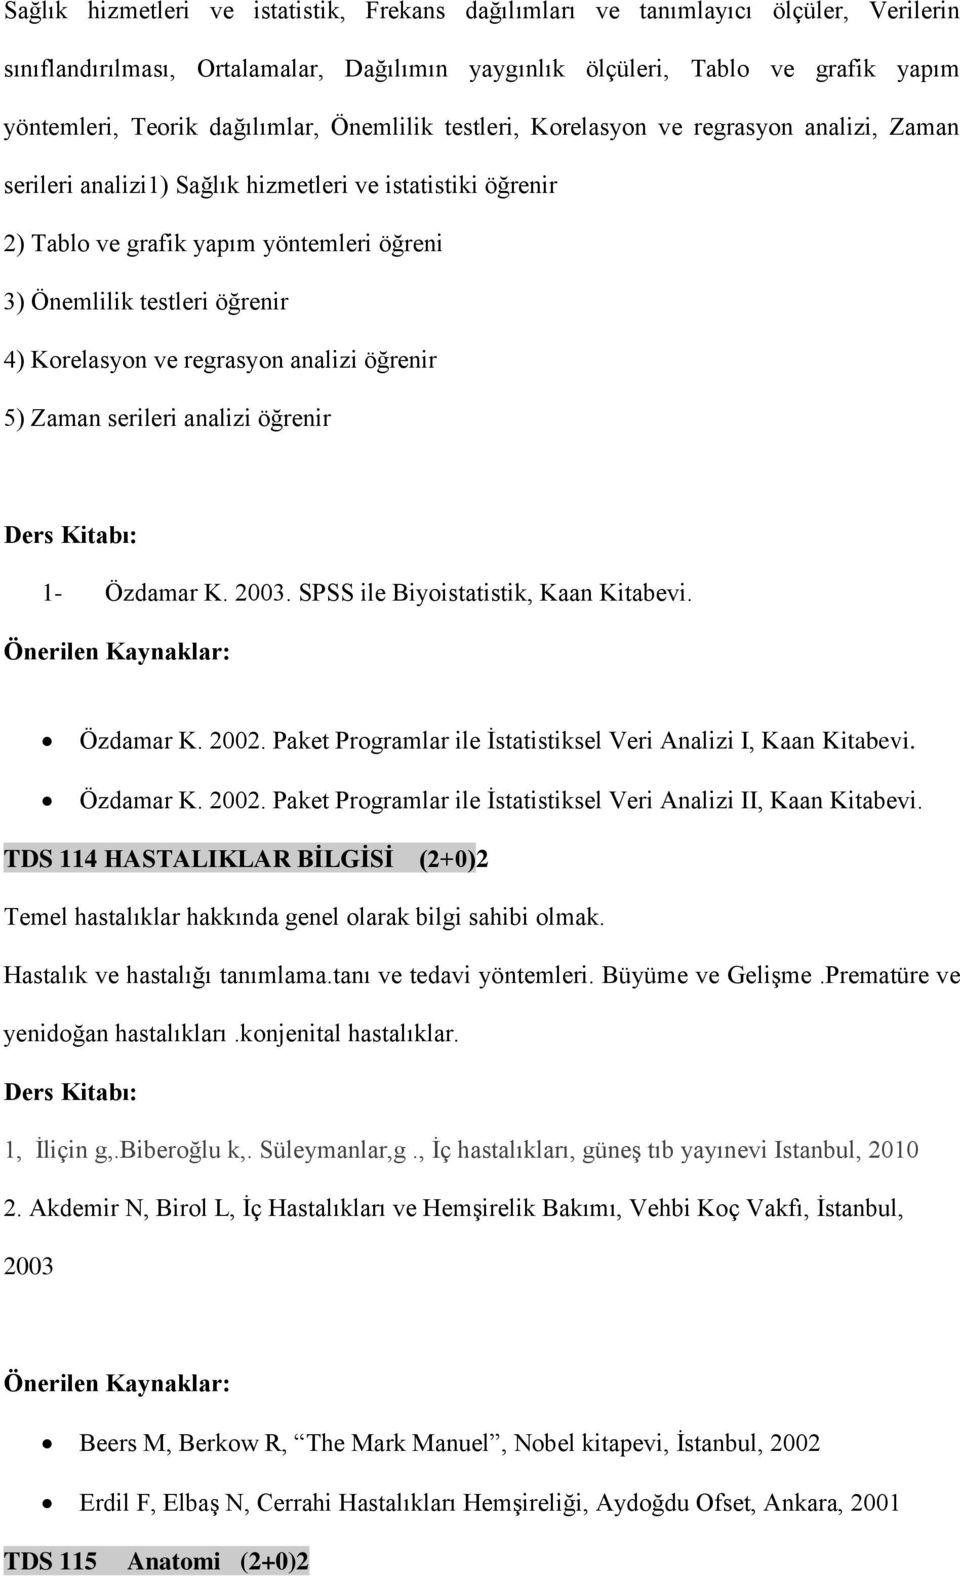 öğrenir 4) Korelasyon ve regrasyon analizi öğrenir 5) Zaman serileri analizi öğrenir 1- Özdamar K. 2003. SPSS ile Biyoistatistik, Kaan Kitabevi. Özdamar K. 2002.